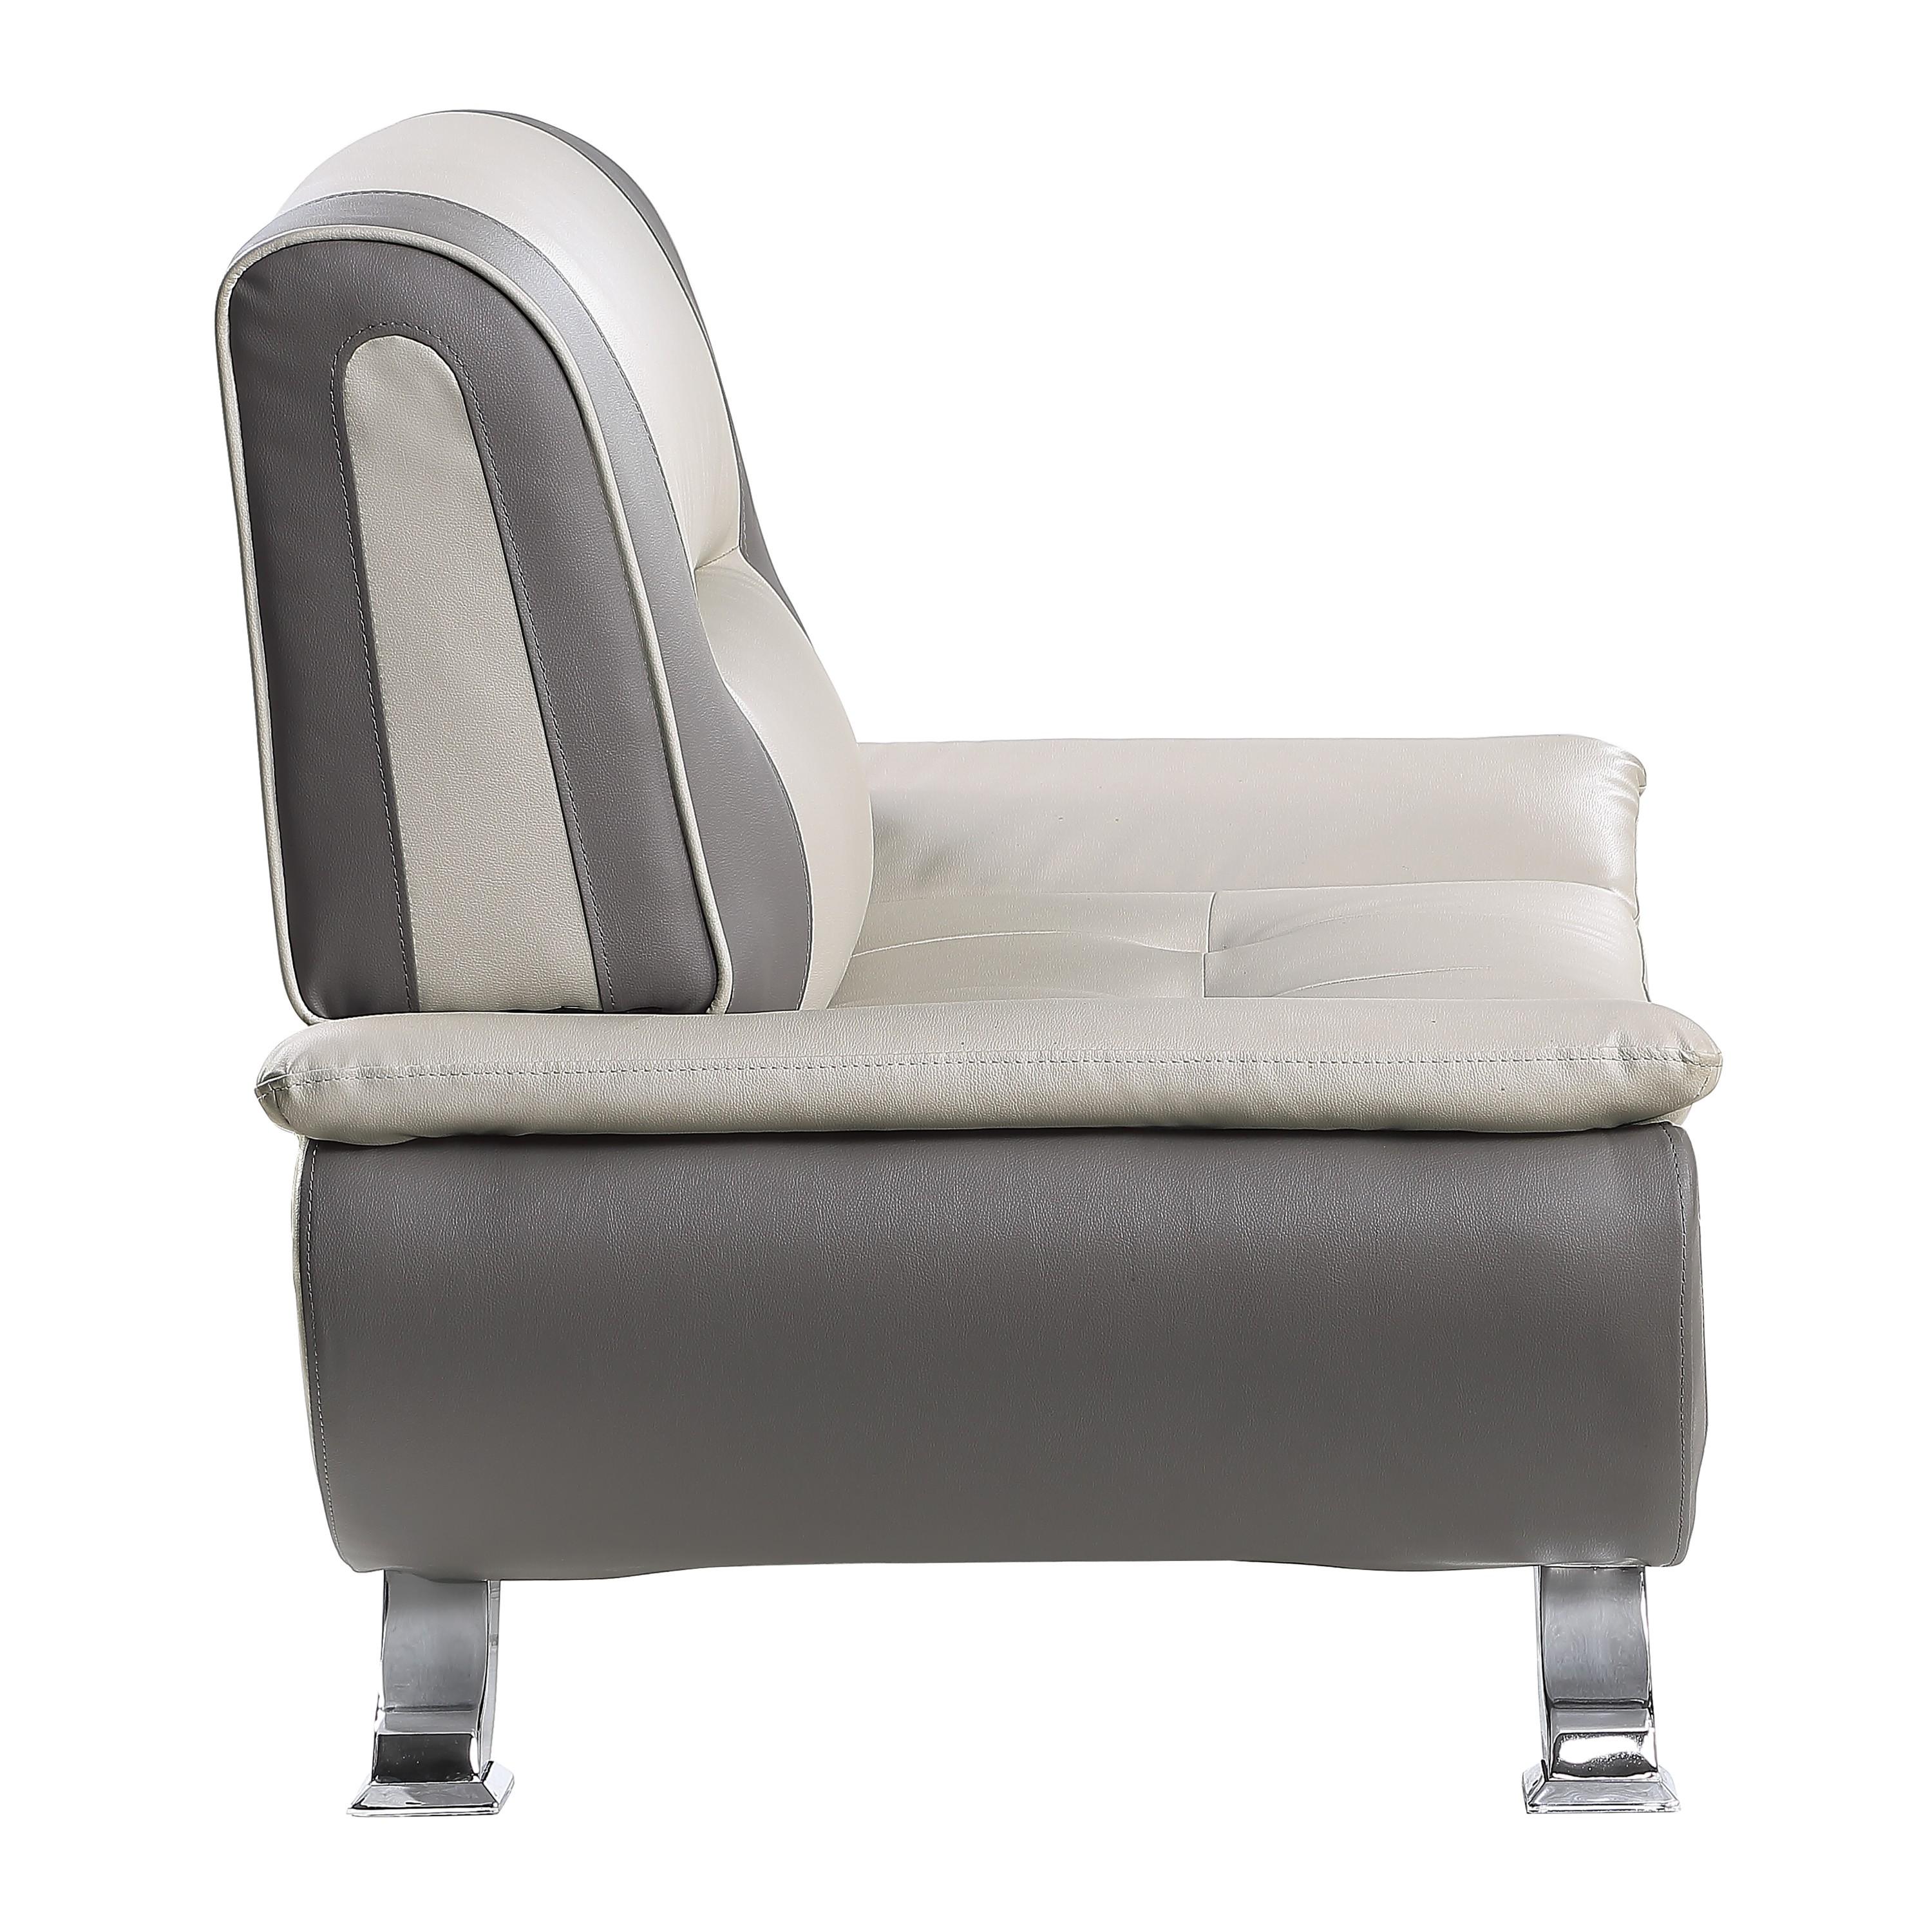 

    
Homelegance 8219BEG-1 Veloce Arm Chair Gray/Beige 8219BEG-1
